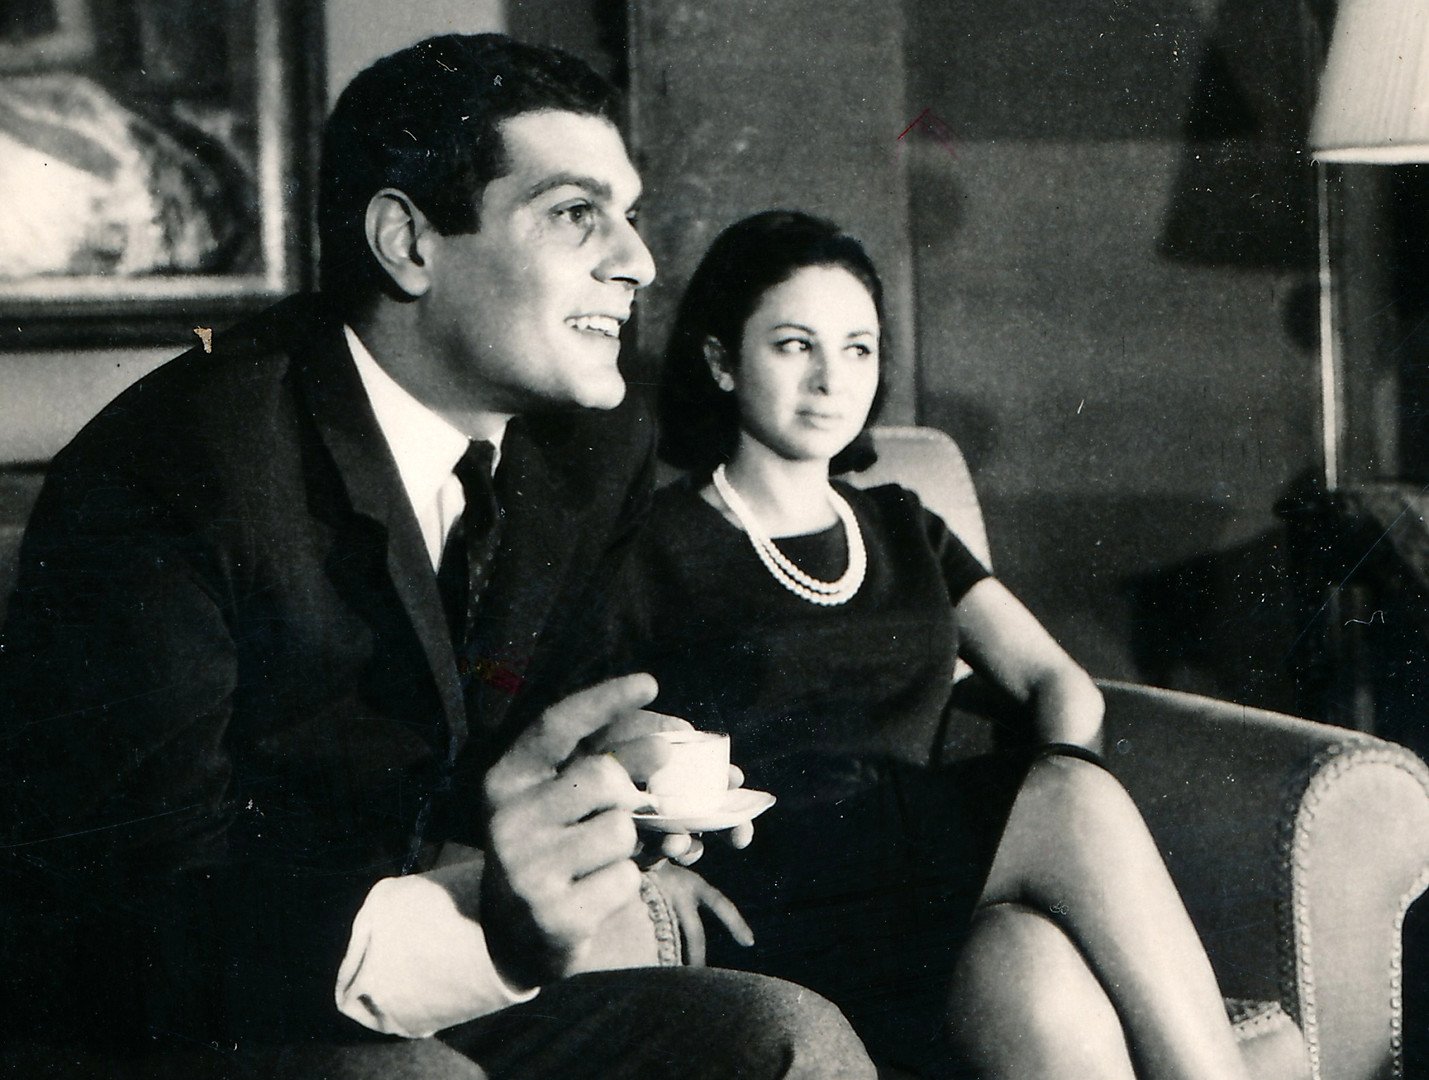  صورة تجمع بين الفنانة الراحلة فاتن حمامة وزوجها الممثل العالمي عمر الشريف في القاهرة عام 1966 